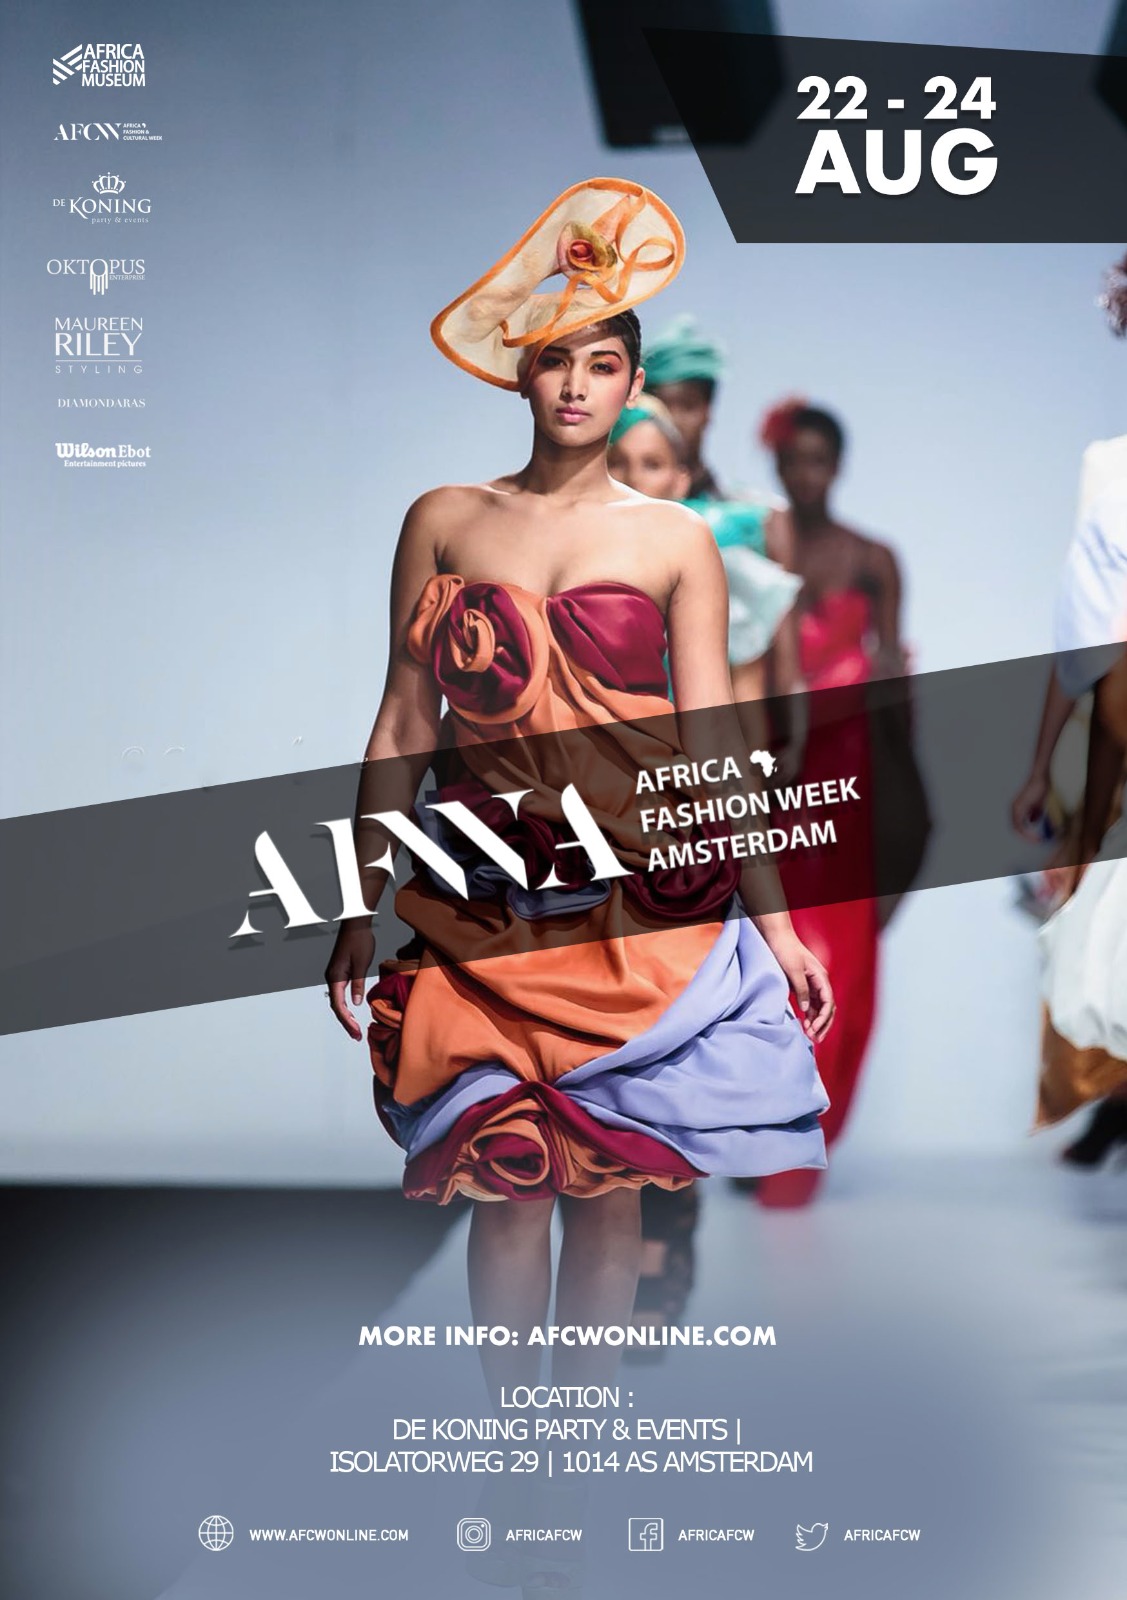 Africa Fashion Week in Amsterdam - Fashion & Art